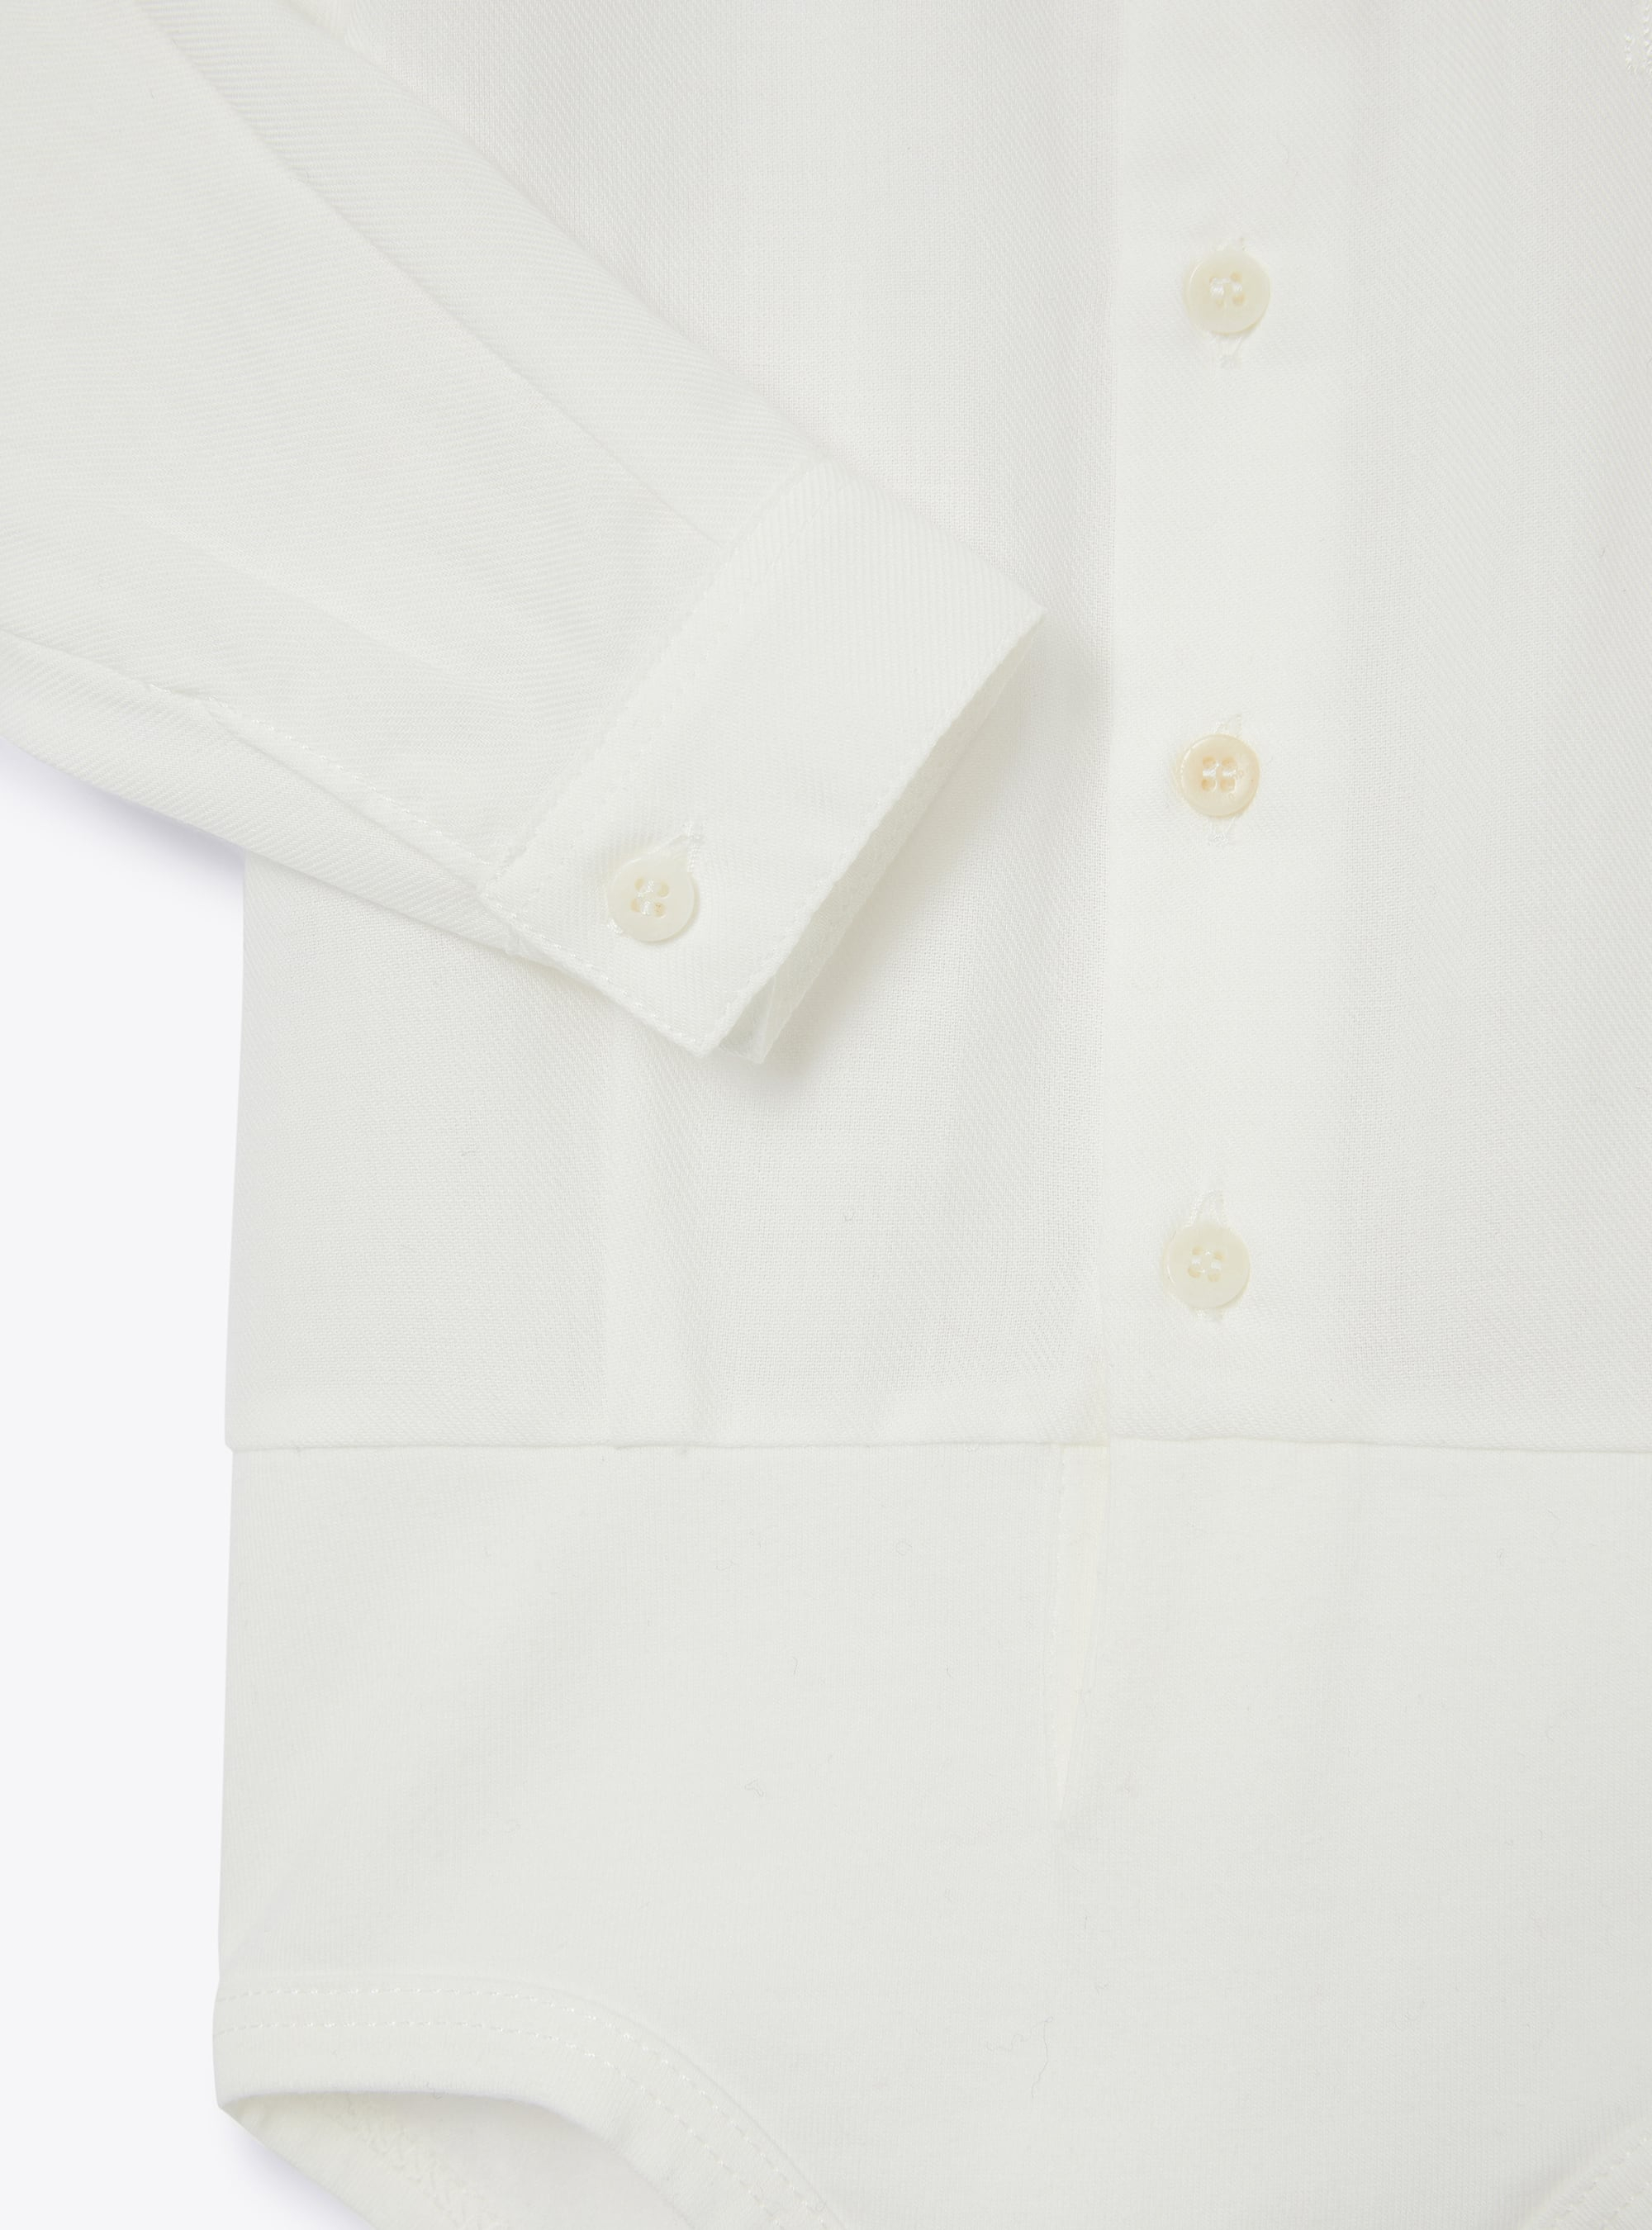 Body camicia bianco da neonato - Bianco | Il Gufo